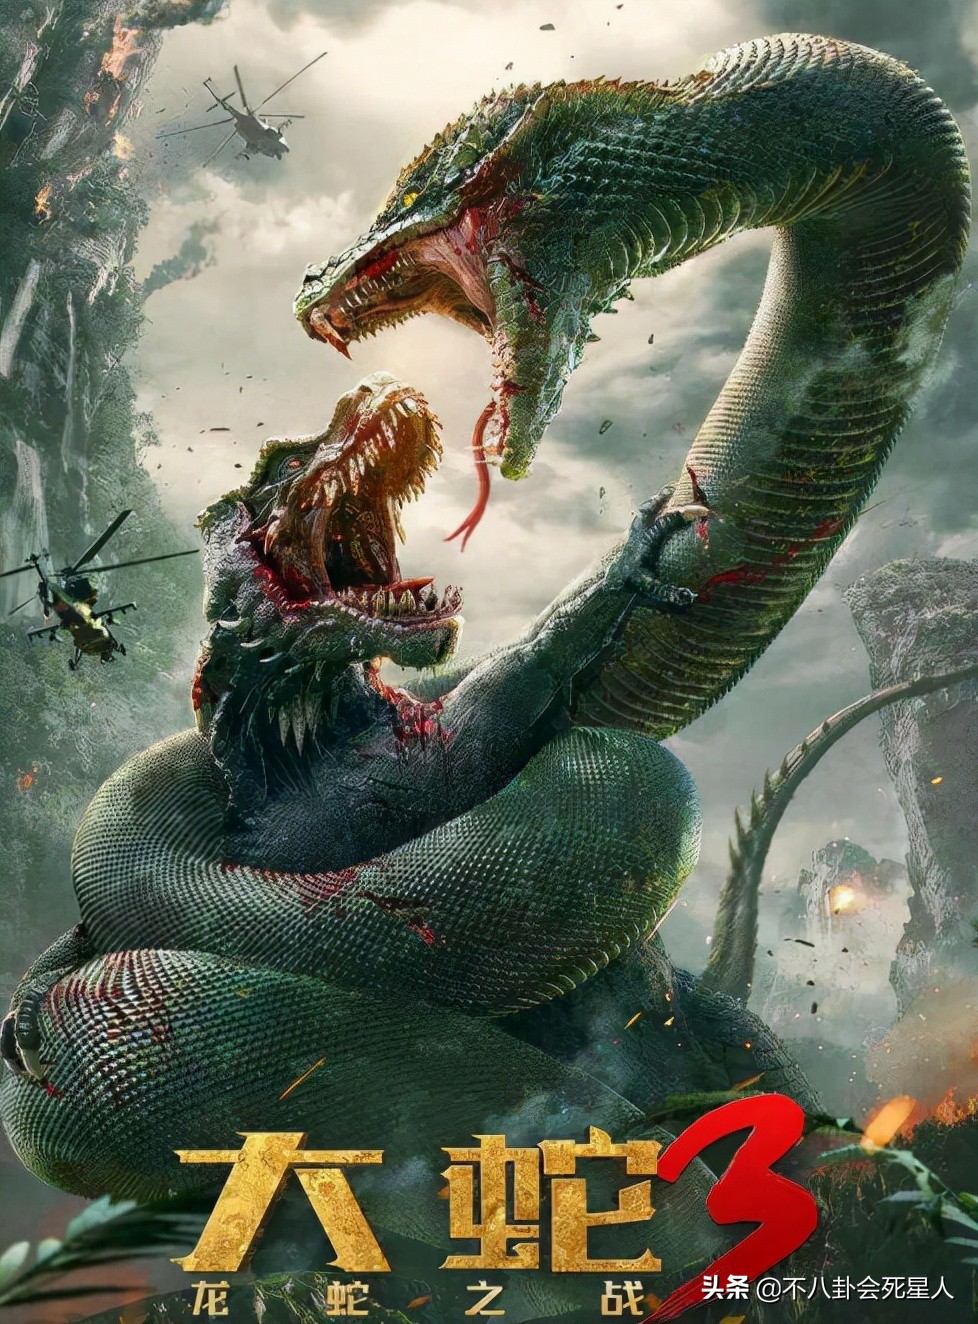 大蛇3龙蛇之战电影剧情「解析」
